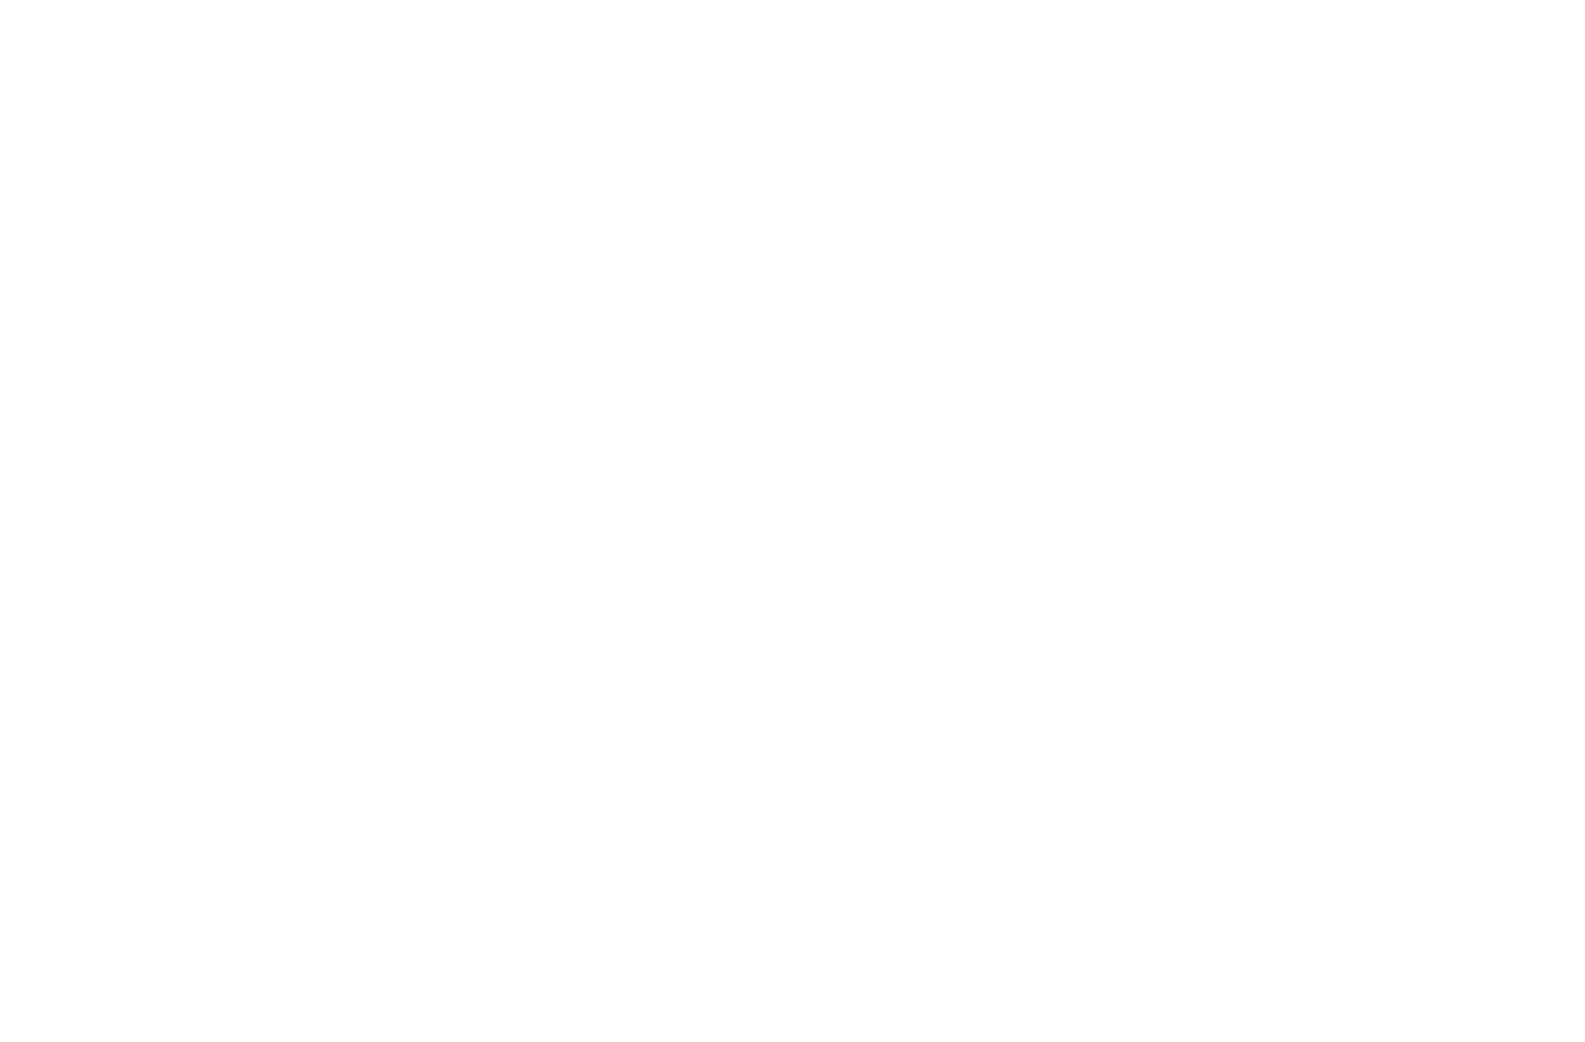 ENAV logo pour fonds sombres (PNG transparent)